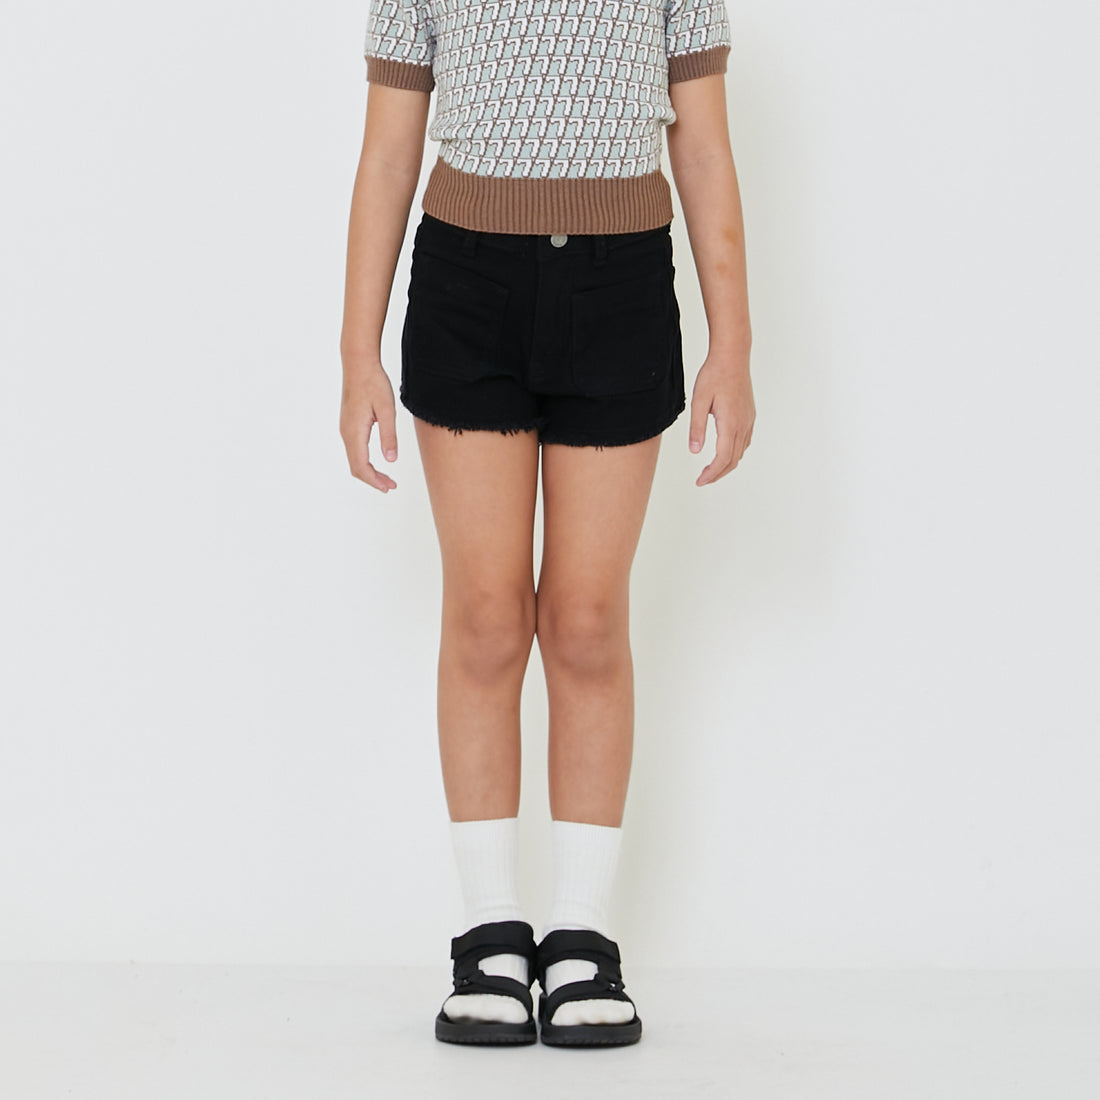 Girl Denim Shorts - SG2401011